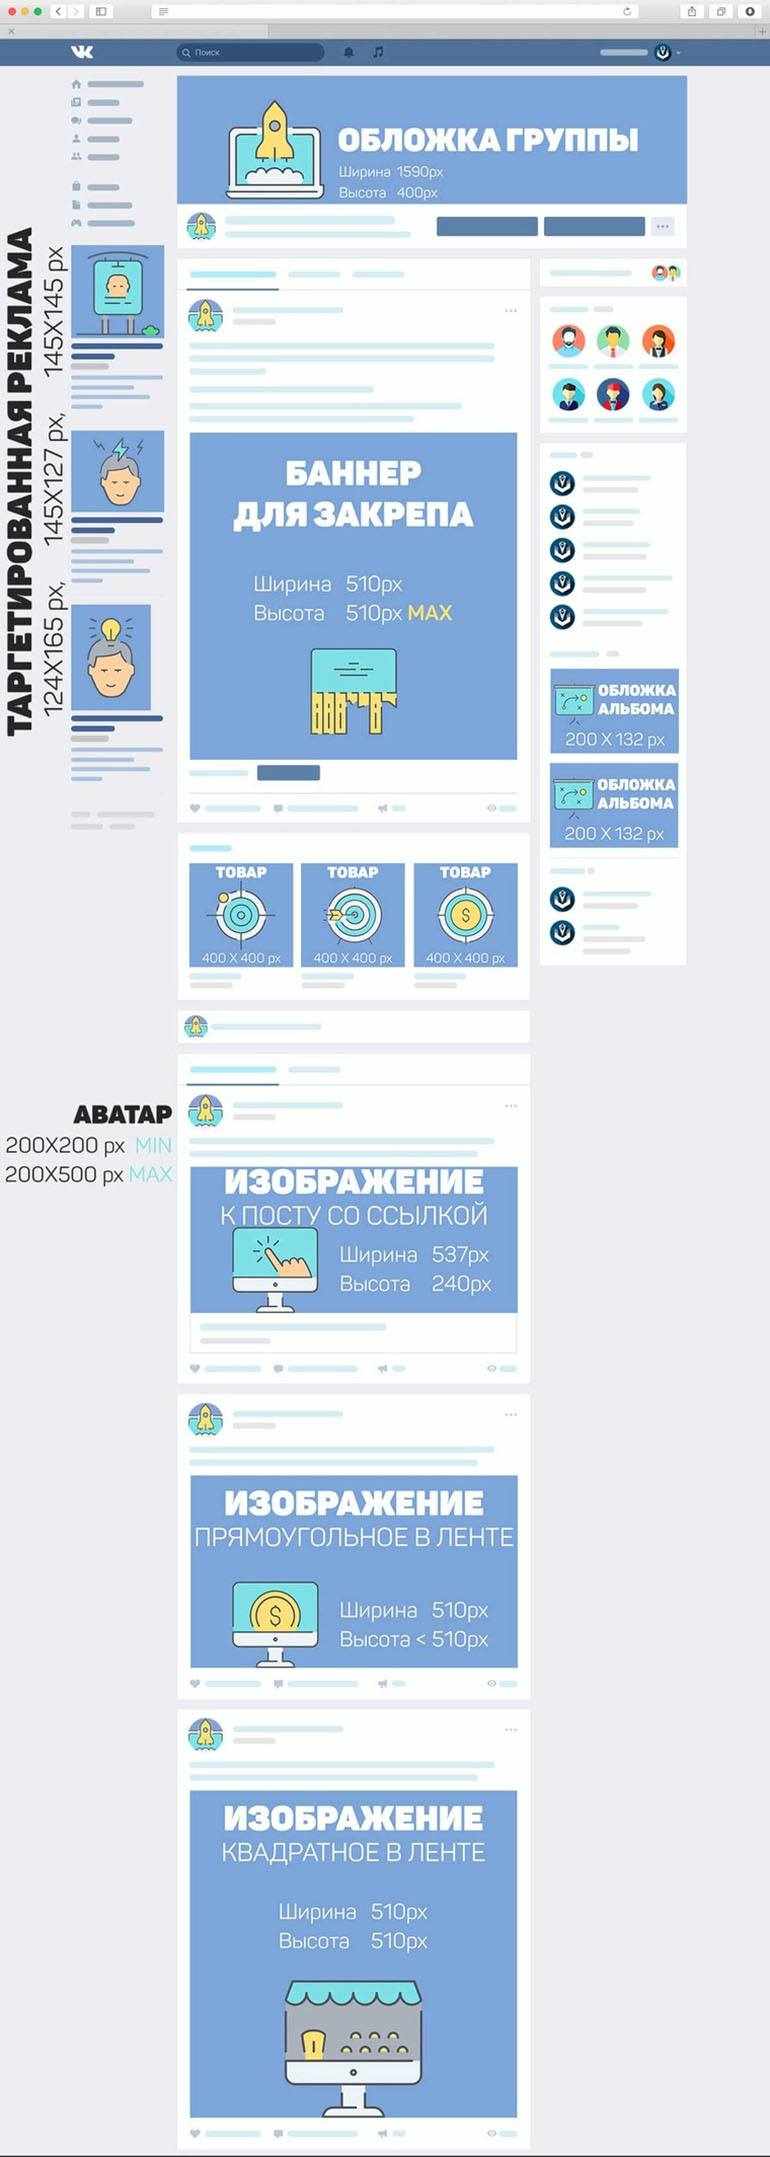 Габариты изображений для оформления группы или сообщества ВКонтакте